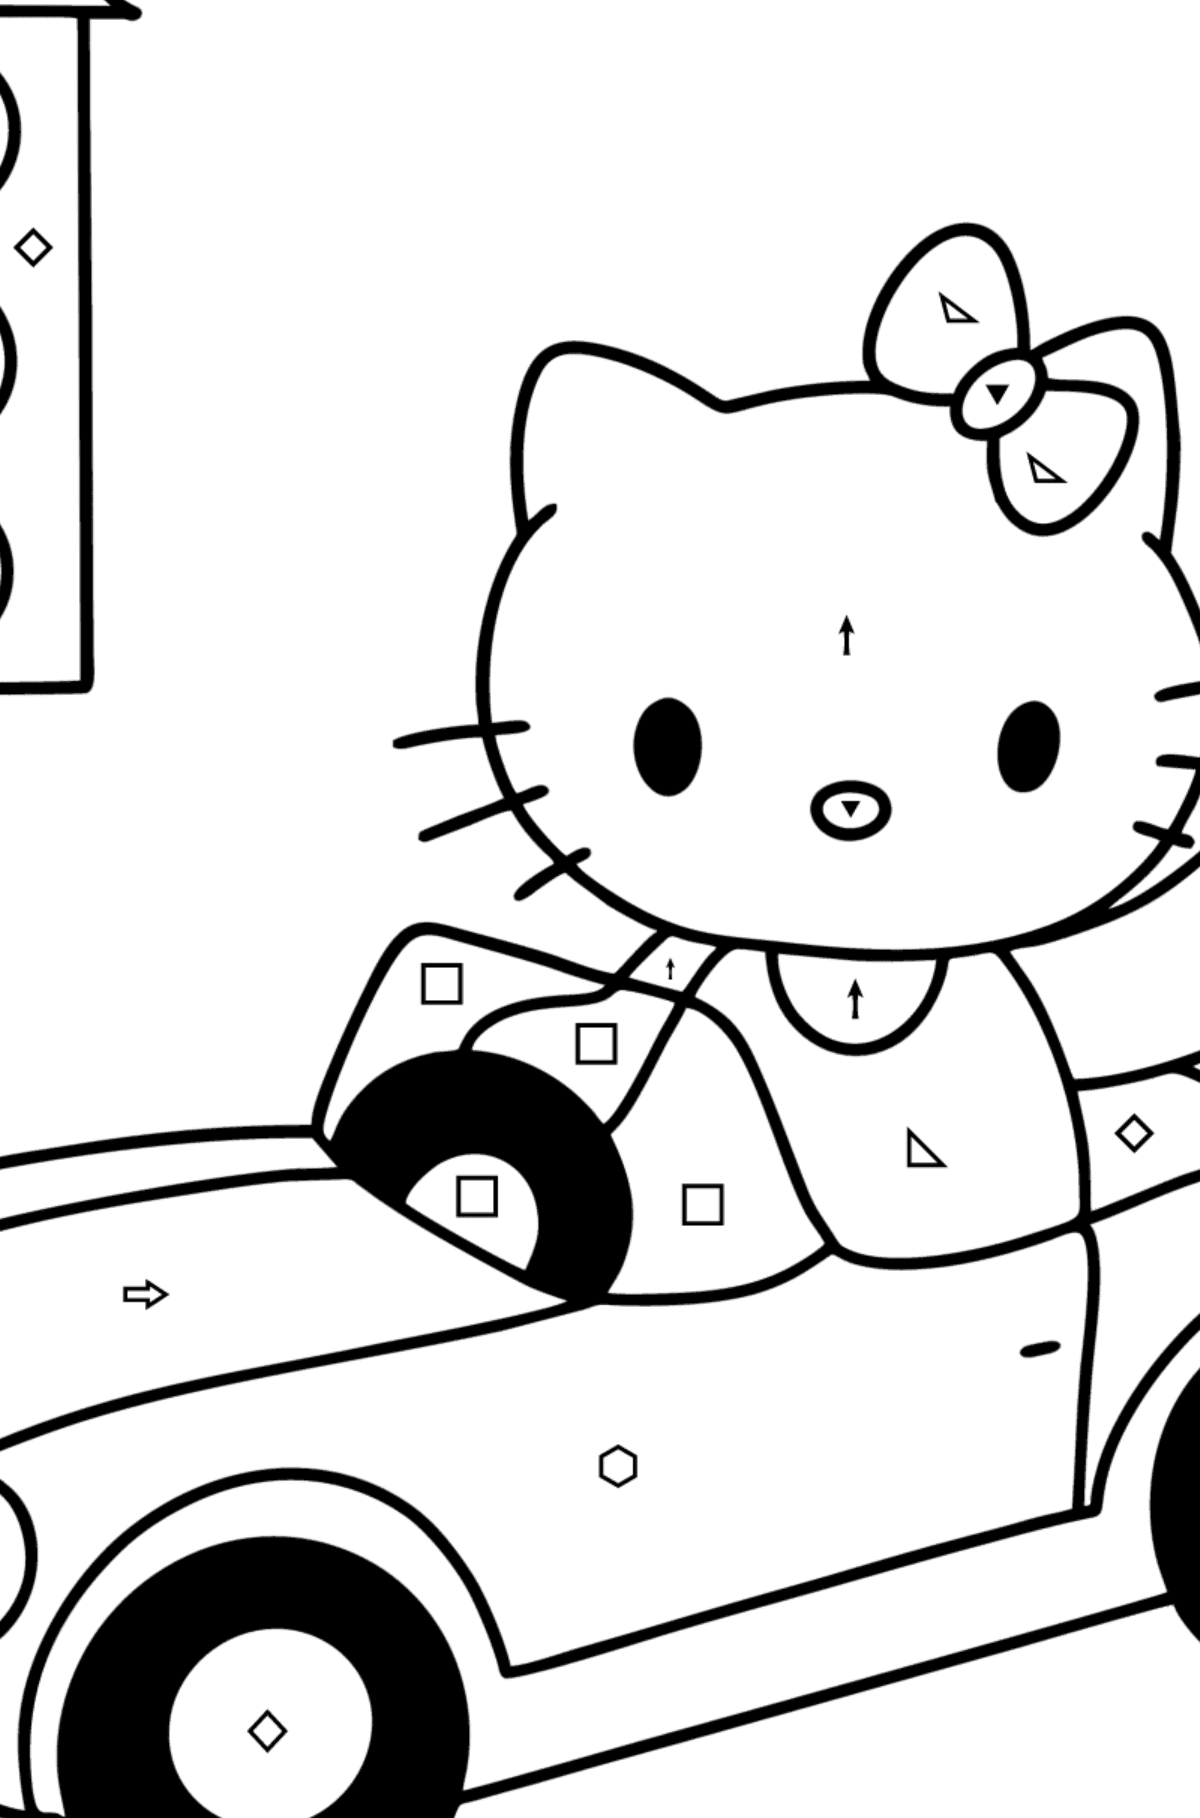 Boyama sayfası Hello Kitty ve araba - Sembollere ve Geometrik Şekillerle Boyama çocuklar için